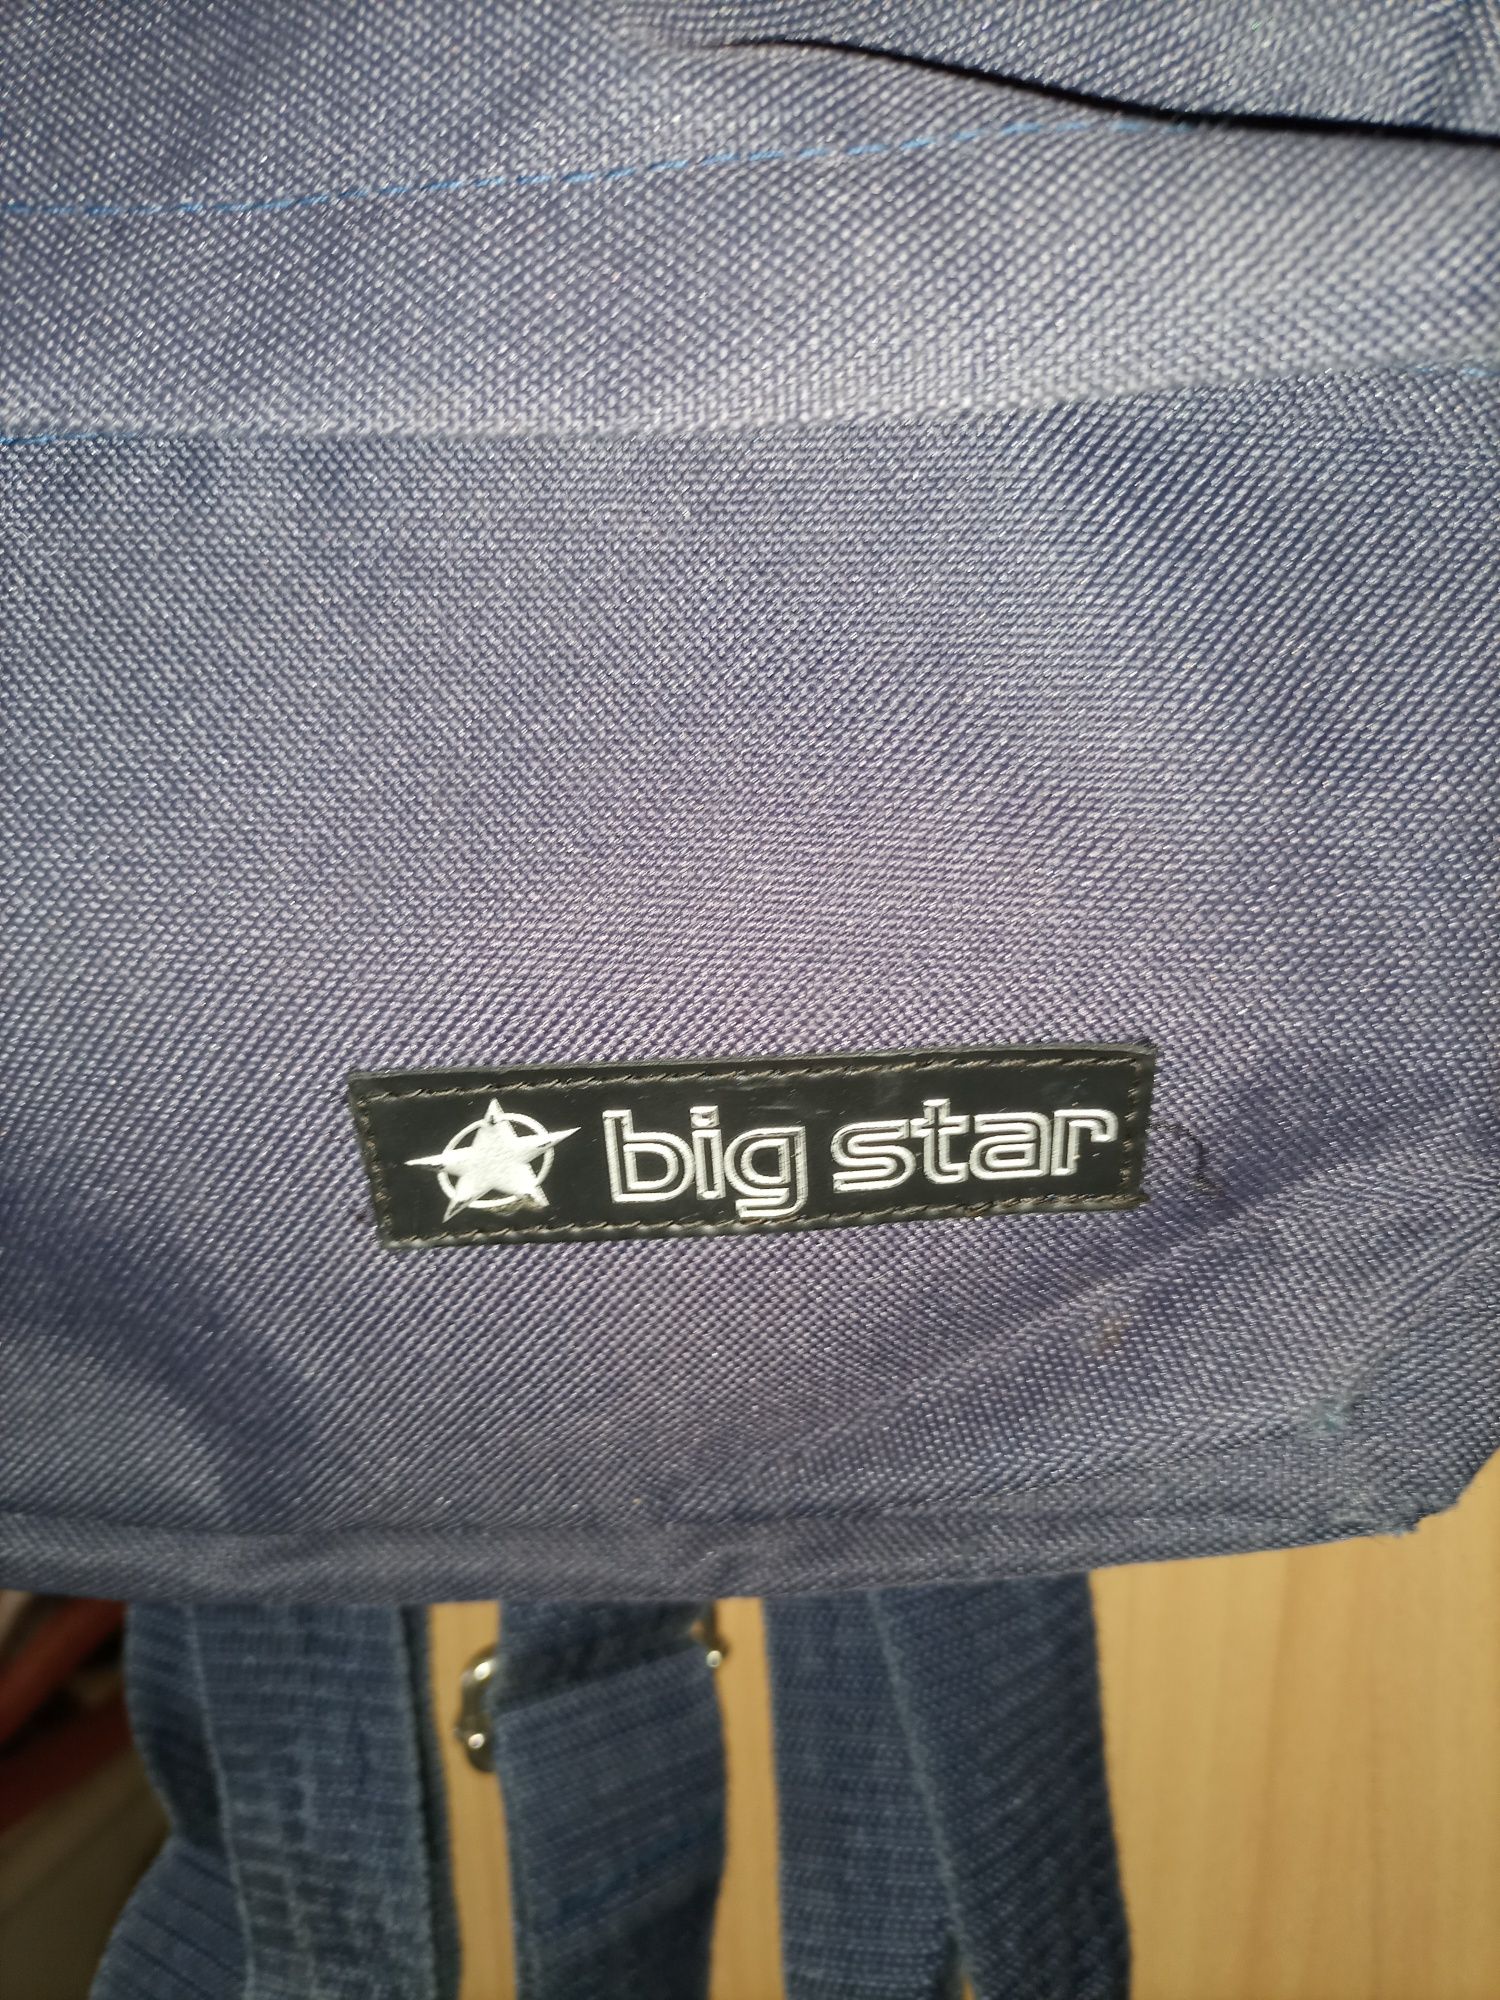 Mała zgrabny podręczny plecak Big Star.